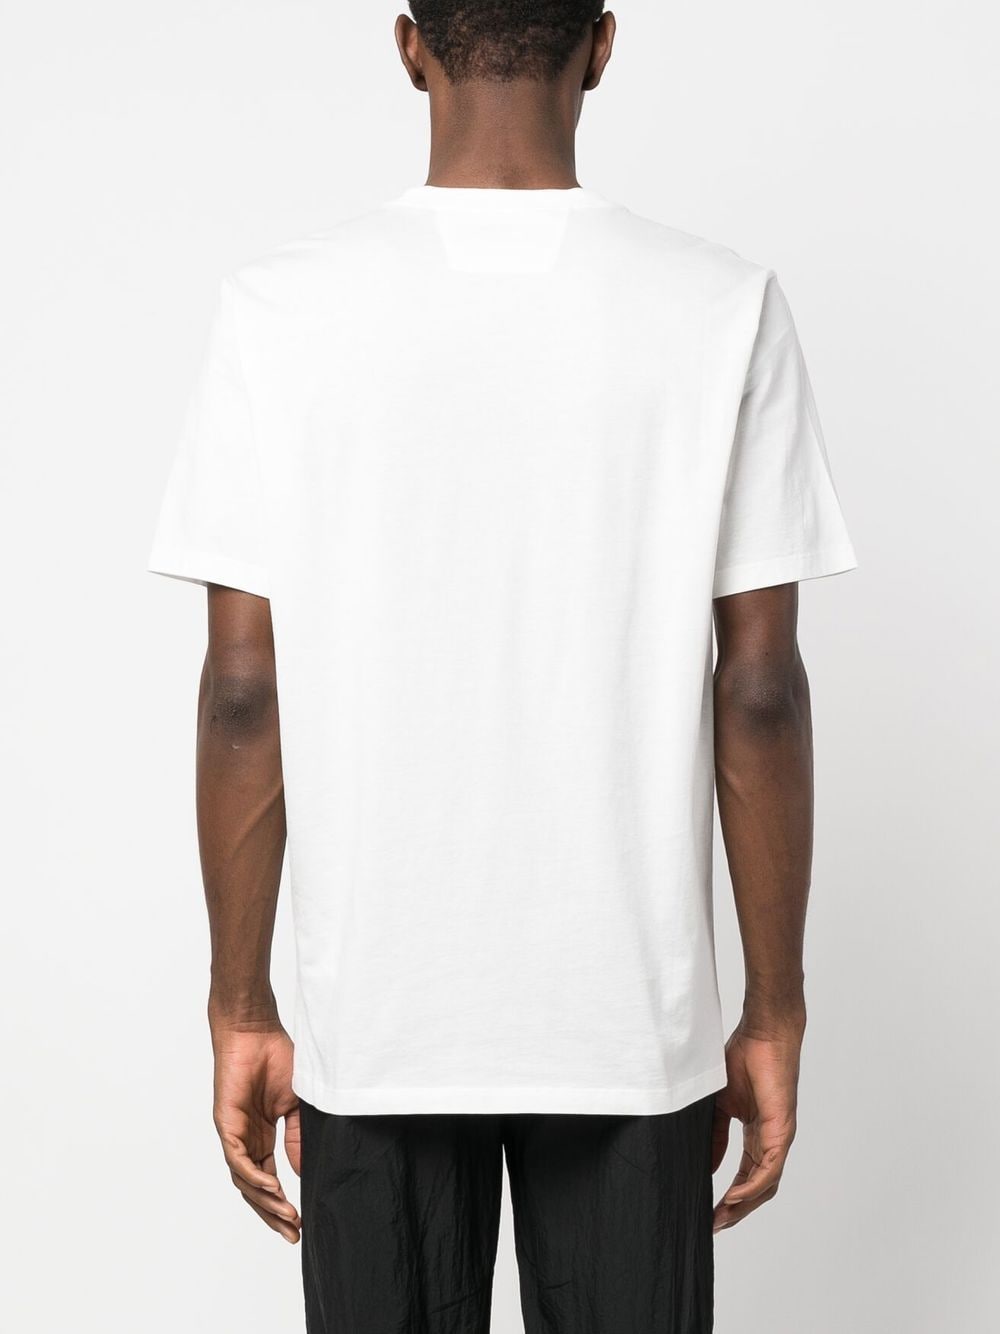 C.P. Company -T-shirt blanc 30/1 Jersey à logo - Lothaire